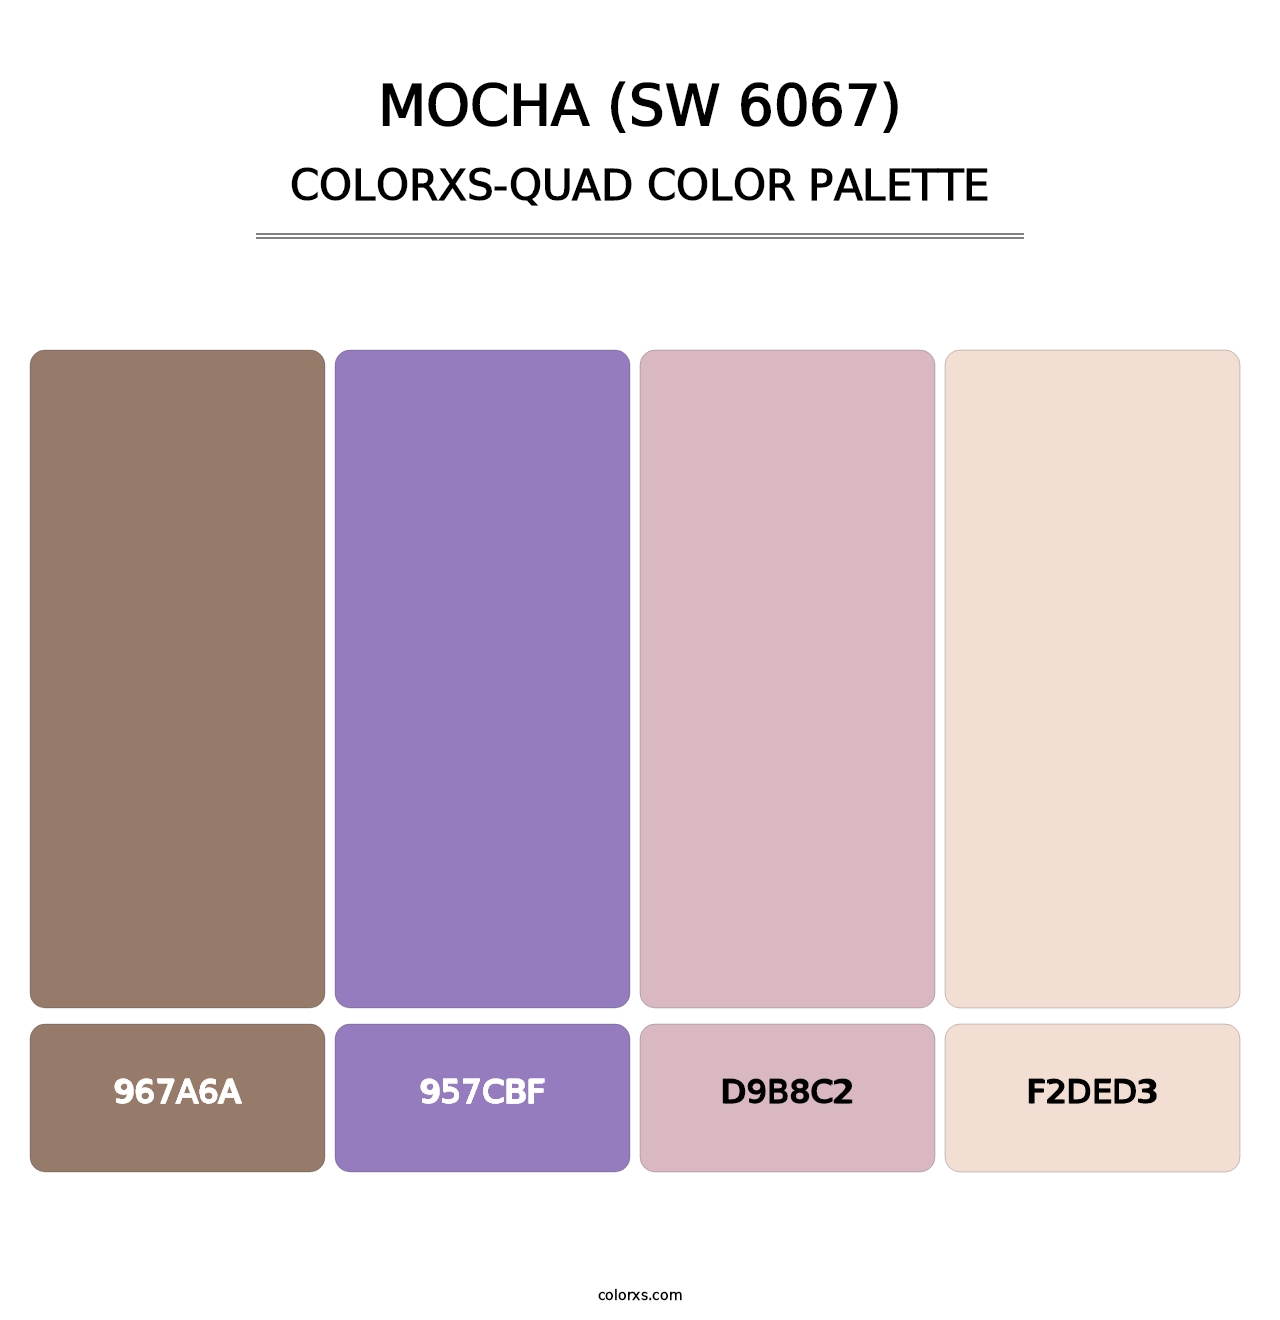 Mocha (SW 6067) - Colorxs Quad Palette